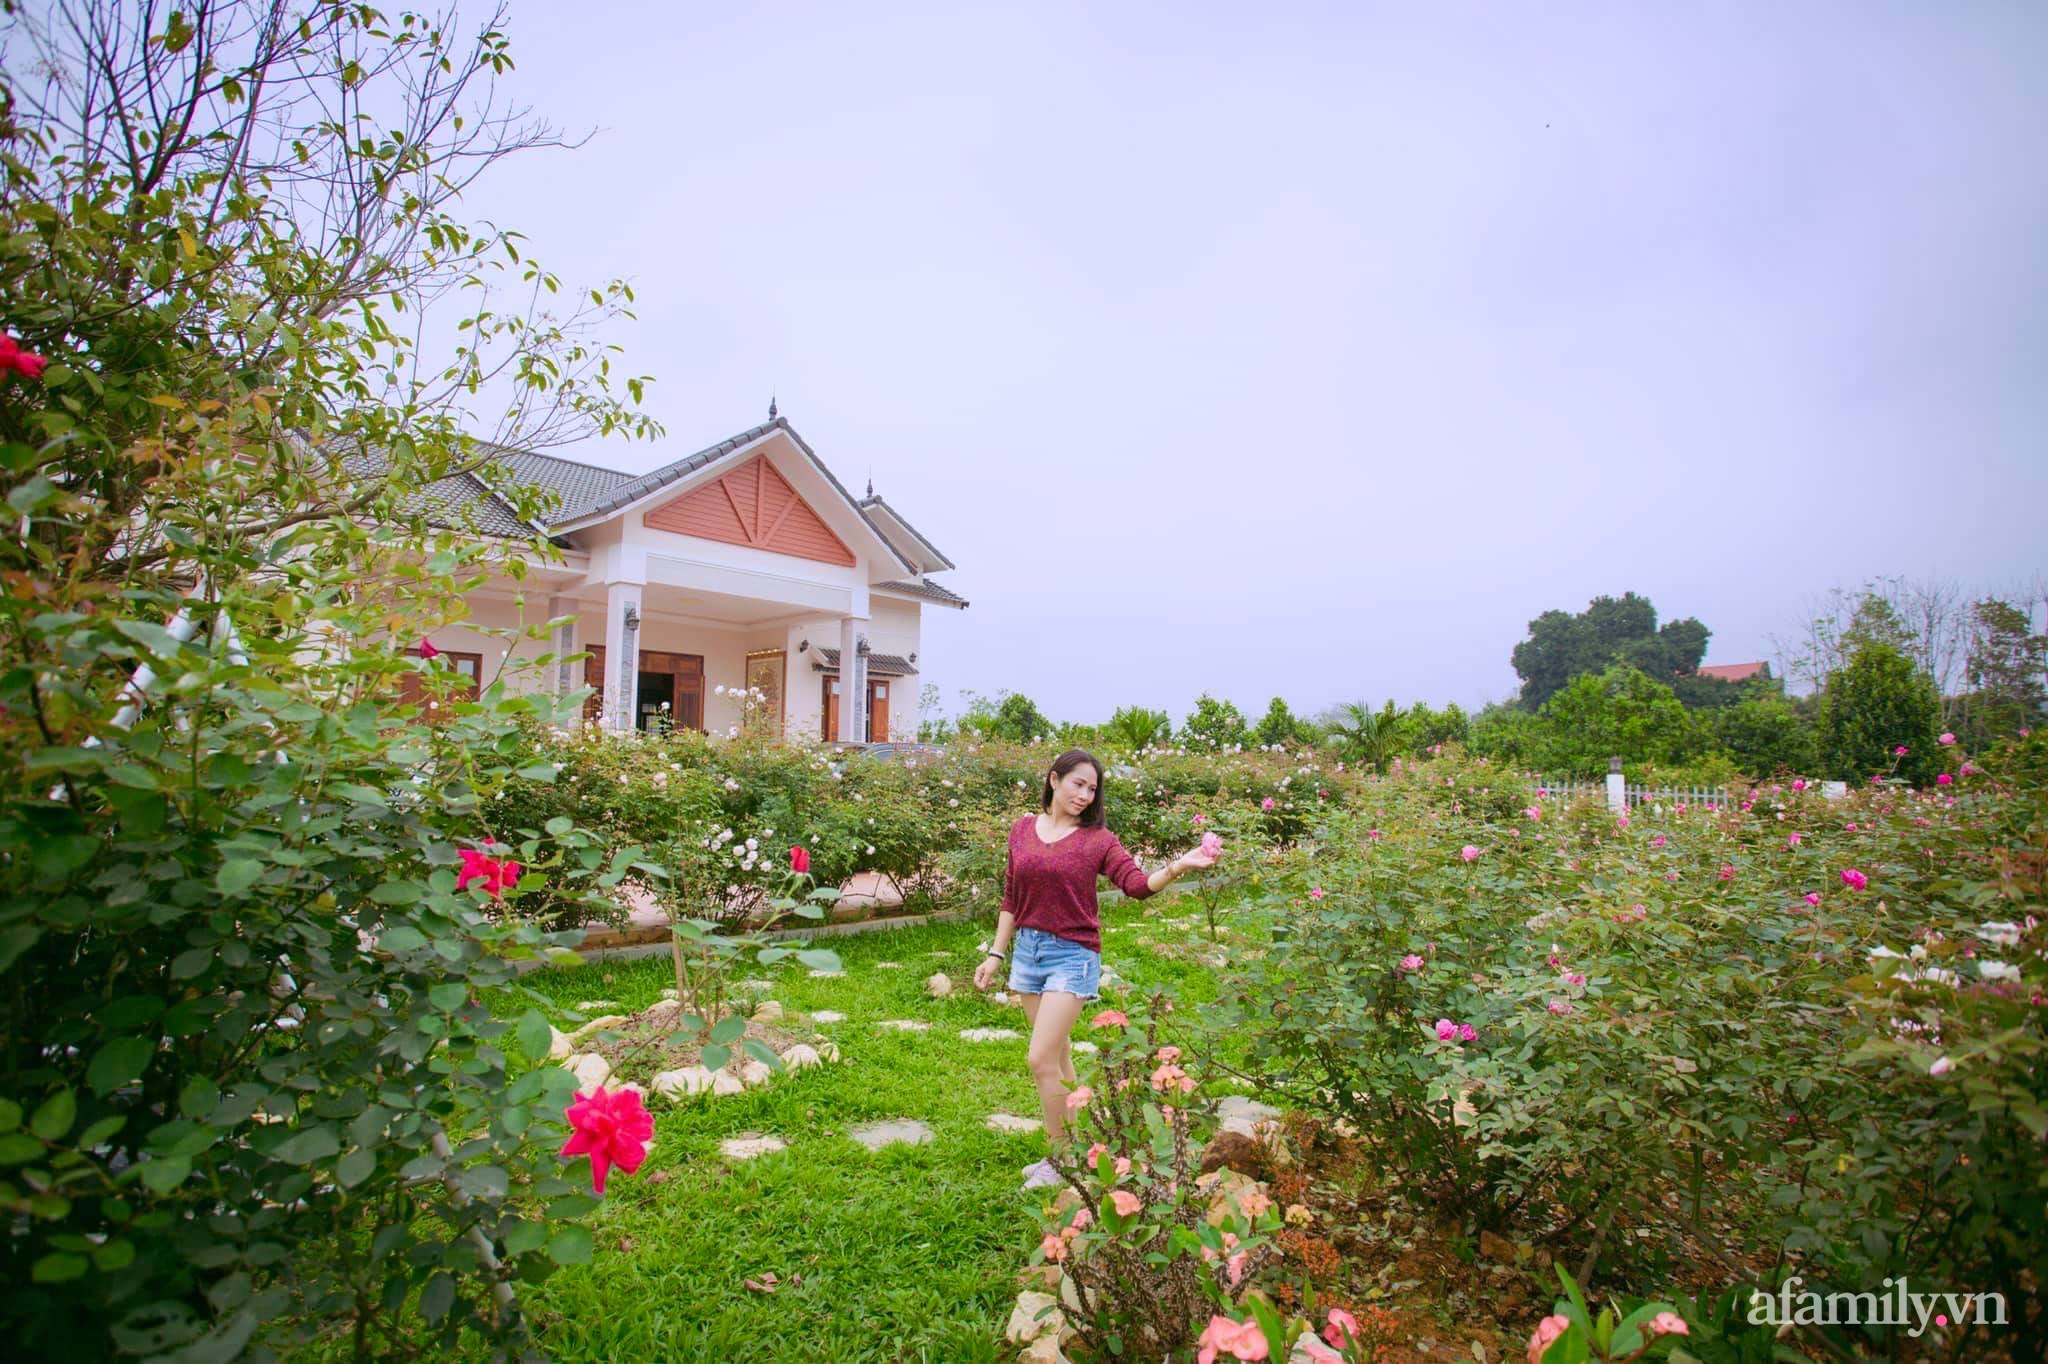 Cuộc sống an yên giữa đồi núi trong ngôi nhà hoa hồng quanh năm tỏa hương sắc của gia đình ở Ba Vì - Ảnh 2.